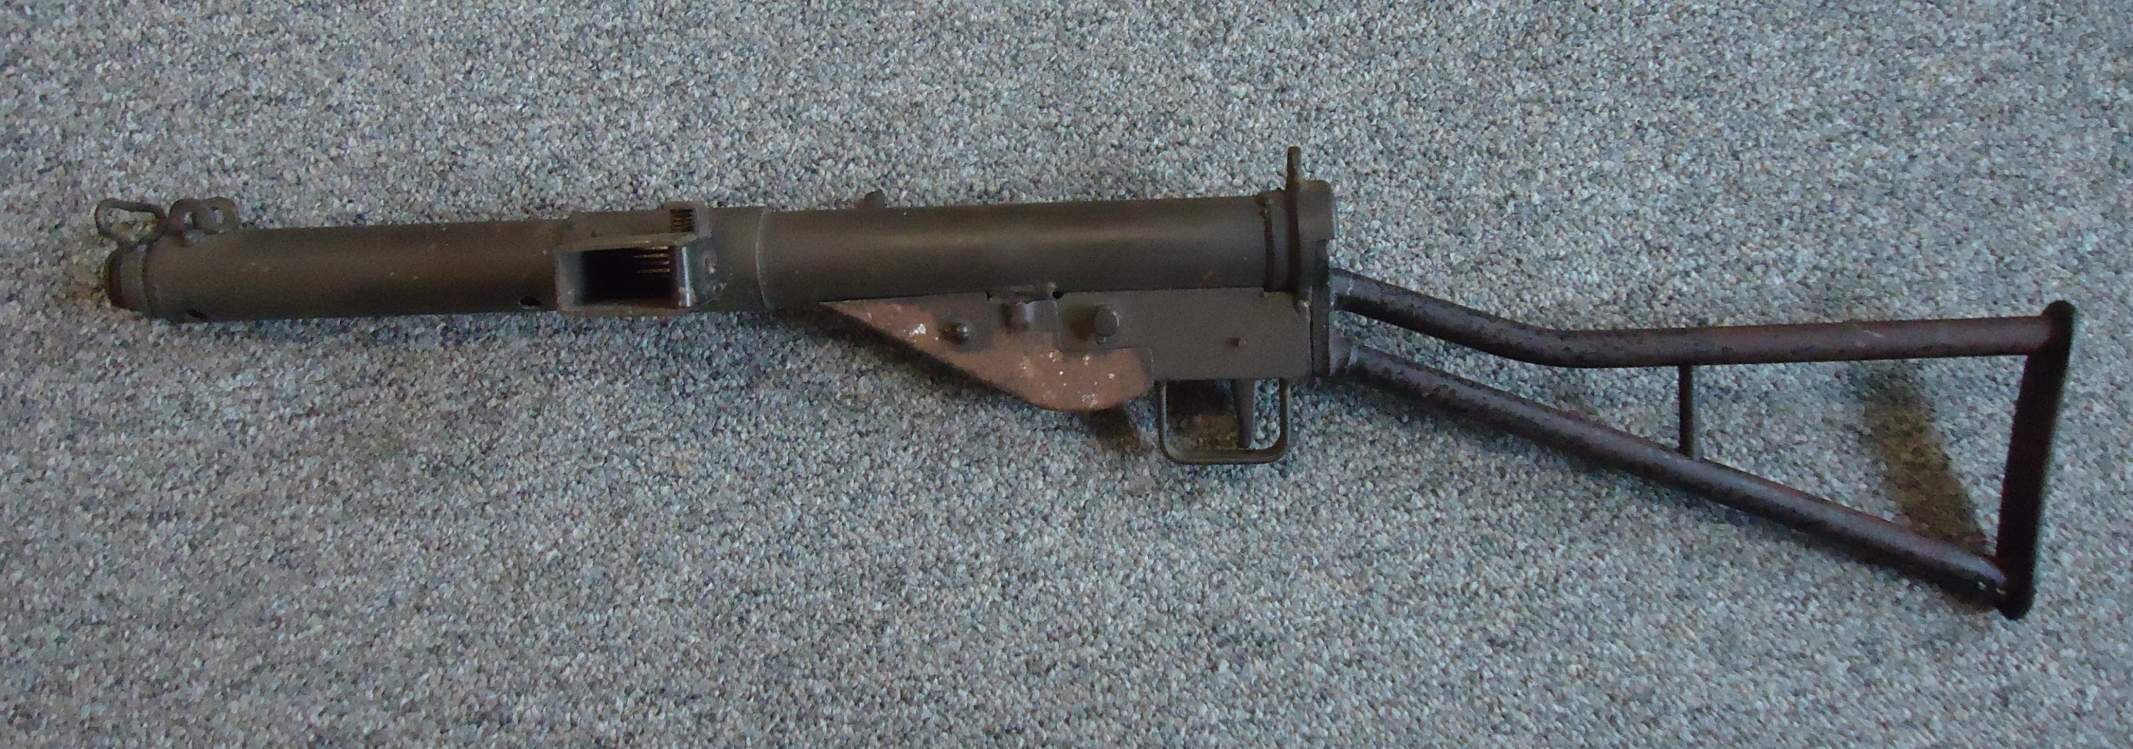 The Sten Gun Not A Homemade Weapon But An Actually 119515764